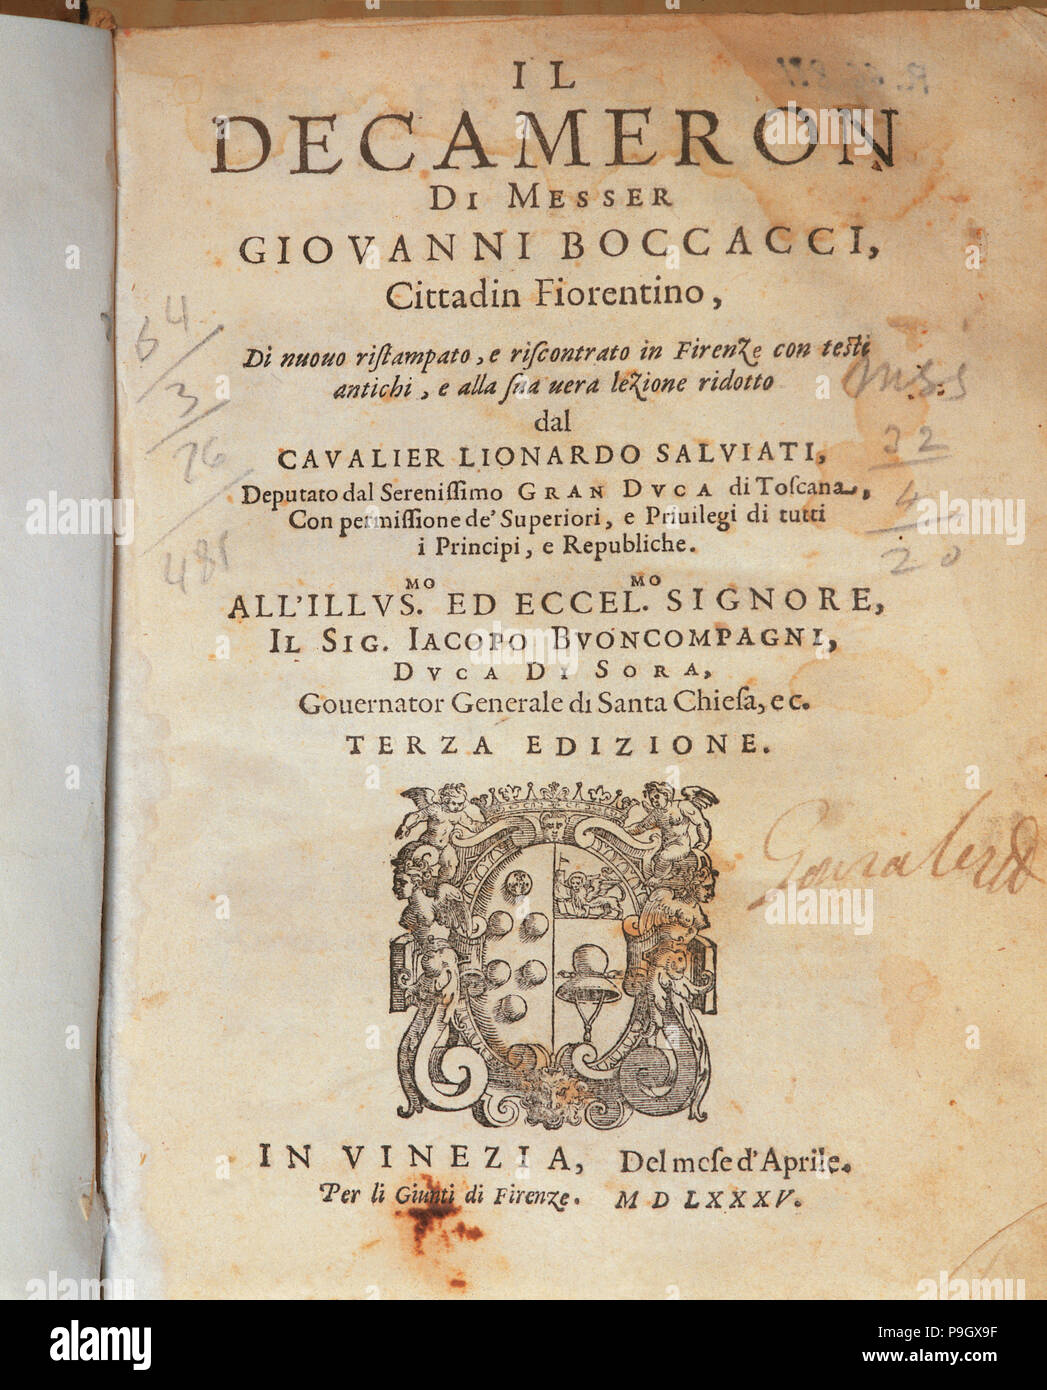 Cover of the Deccameron by Giovanni Boccaccio, published in Venice, 1635. Stock Photo